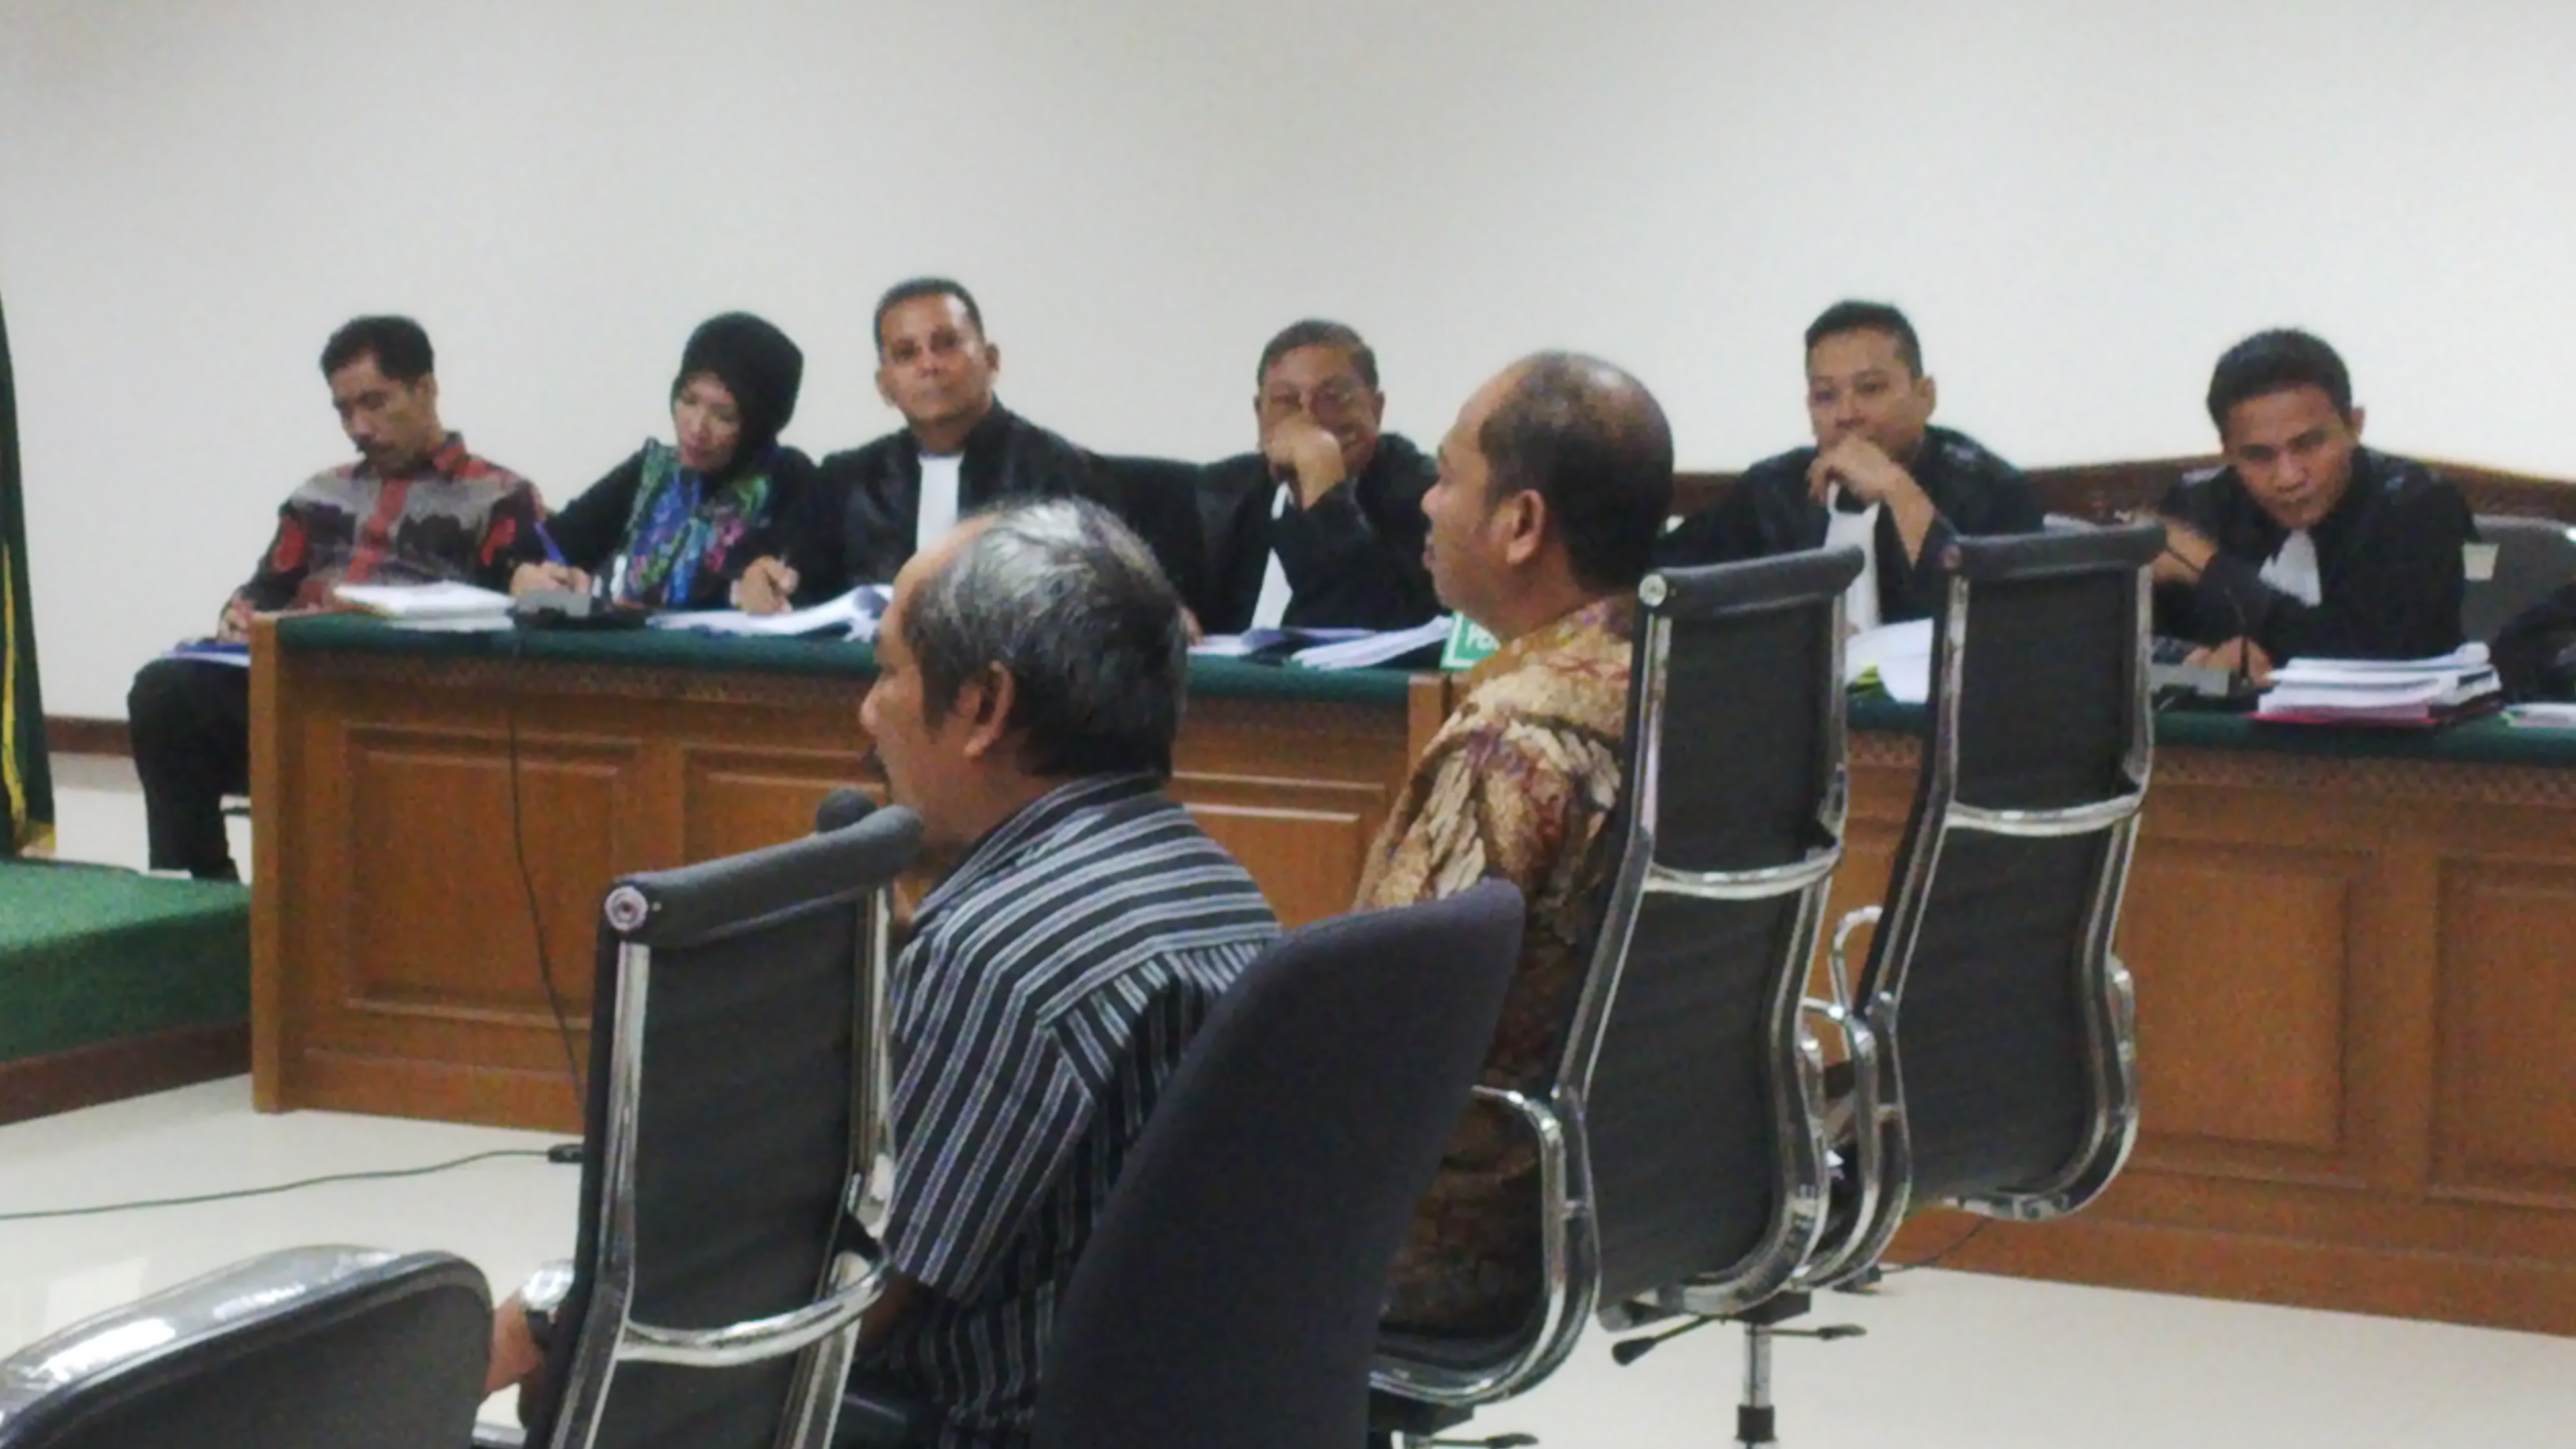 Kamarussalam alias Polo (baju biru bergaris) saat memberikan keterangan dalam sidang perkara korupsi Wali kota Palembang Romi Herton dan istrinya, Masyito di Pengadilan Tipikor Jakarta, Kamis (27/11). Foto: NOV